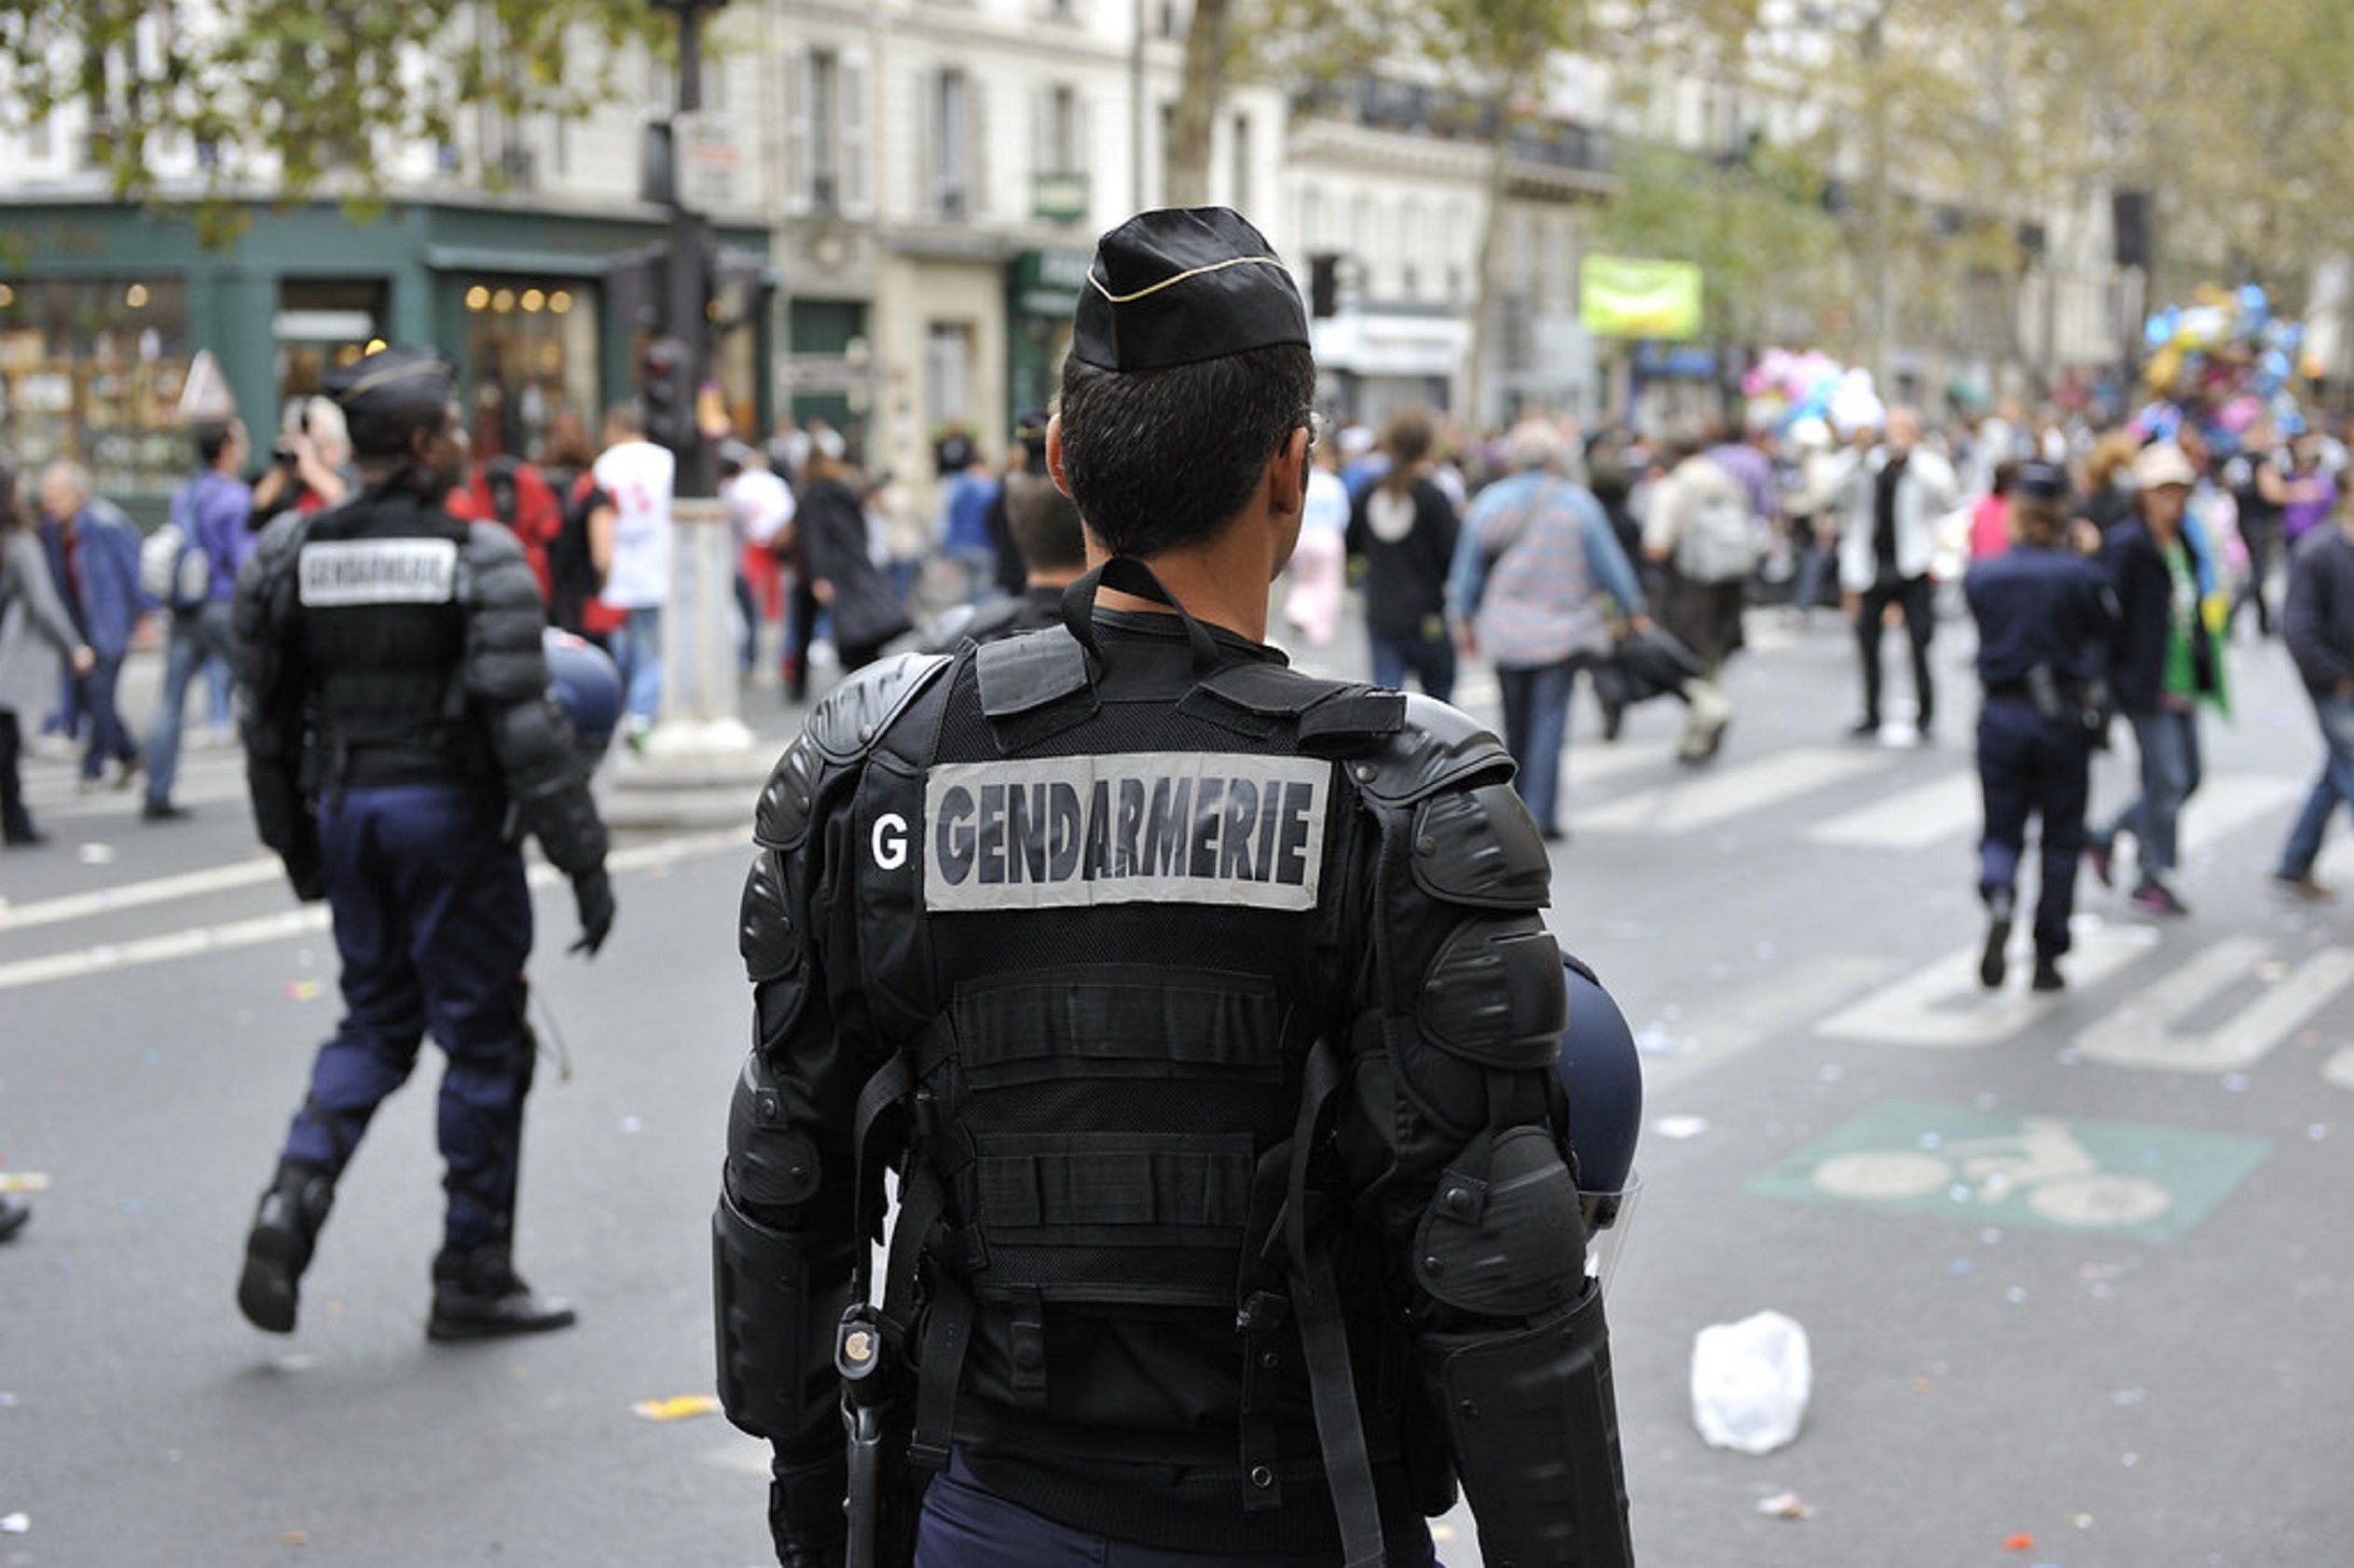 Policia França / Flickr